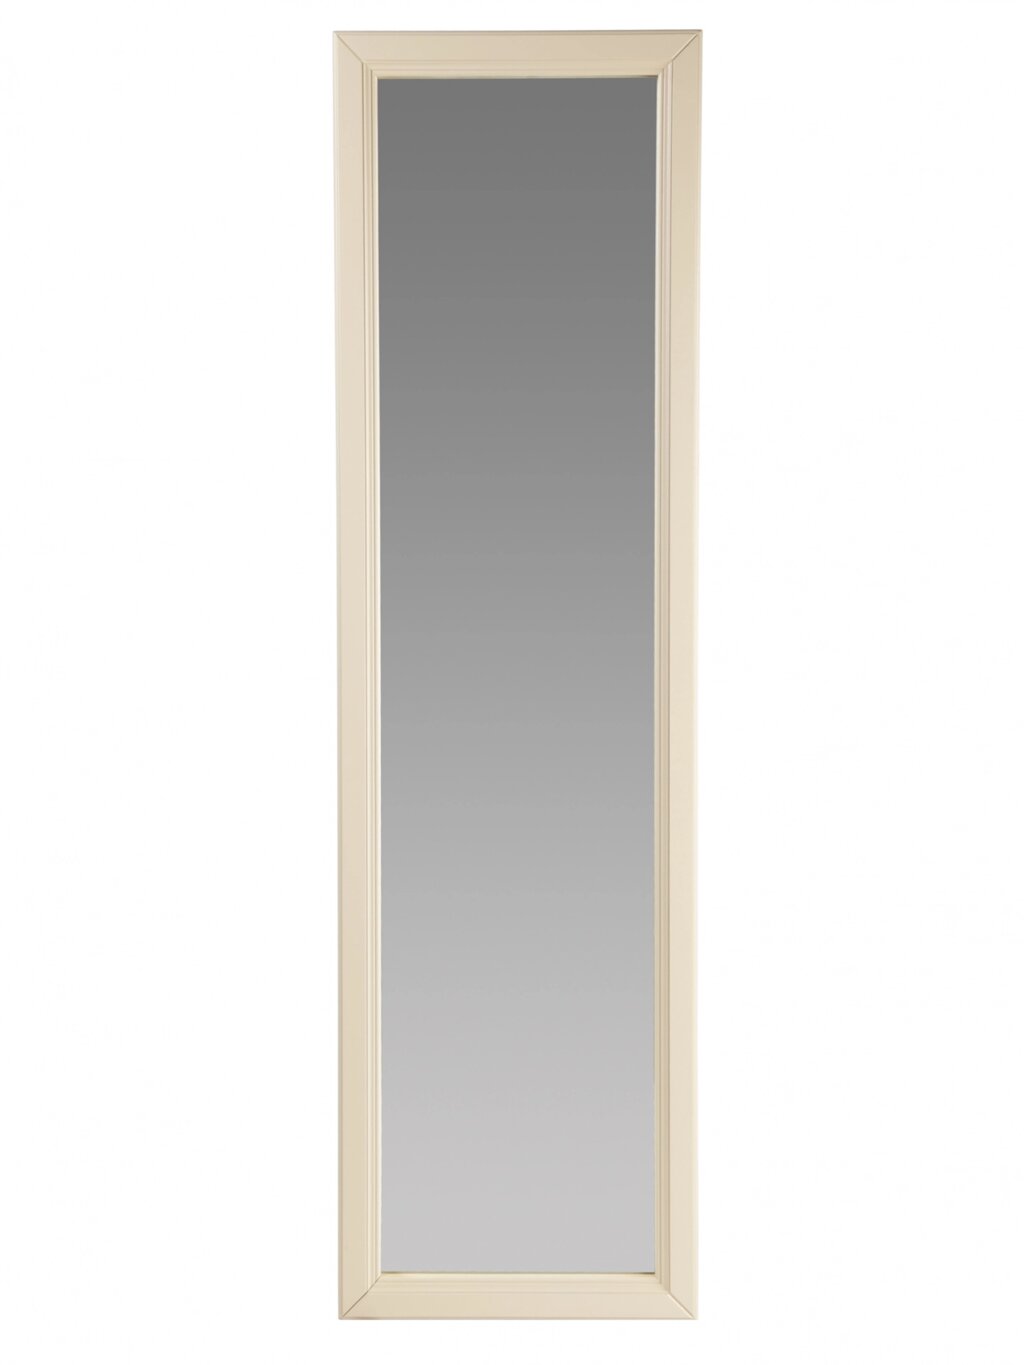 Зеркало настенное Селена слоновая кость от компании M-Lion мебель - фото 1